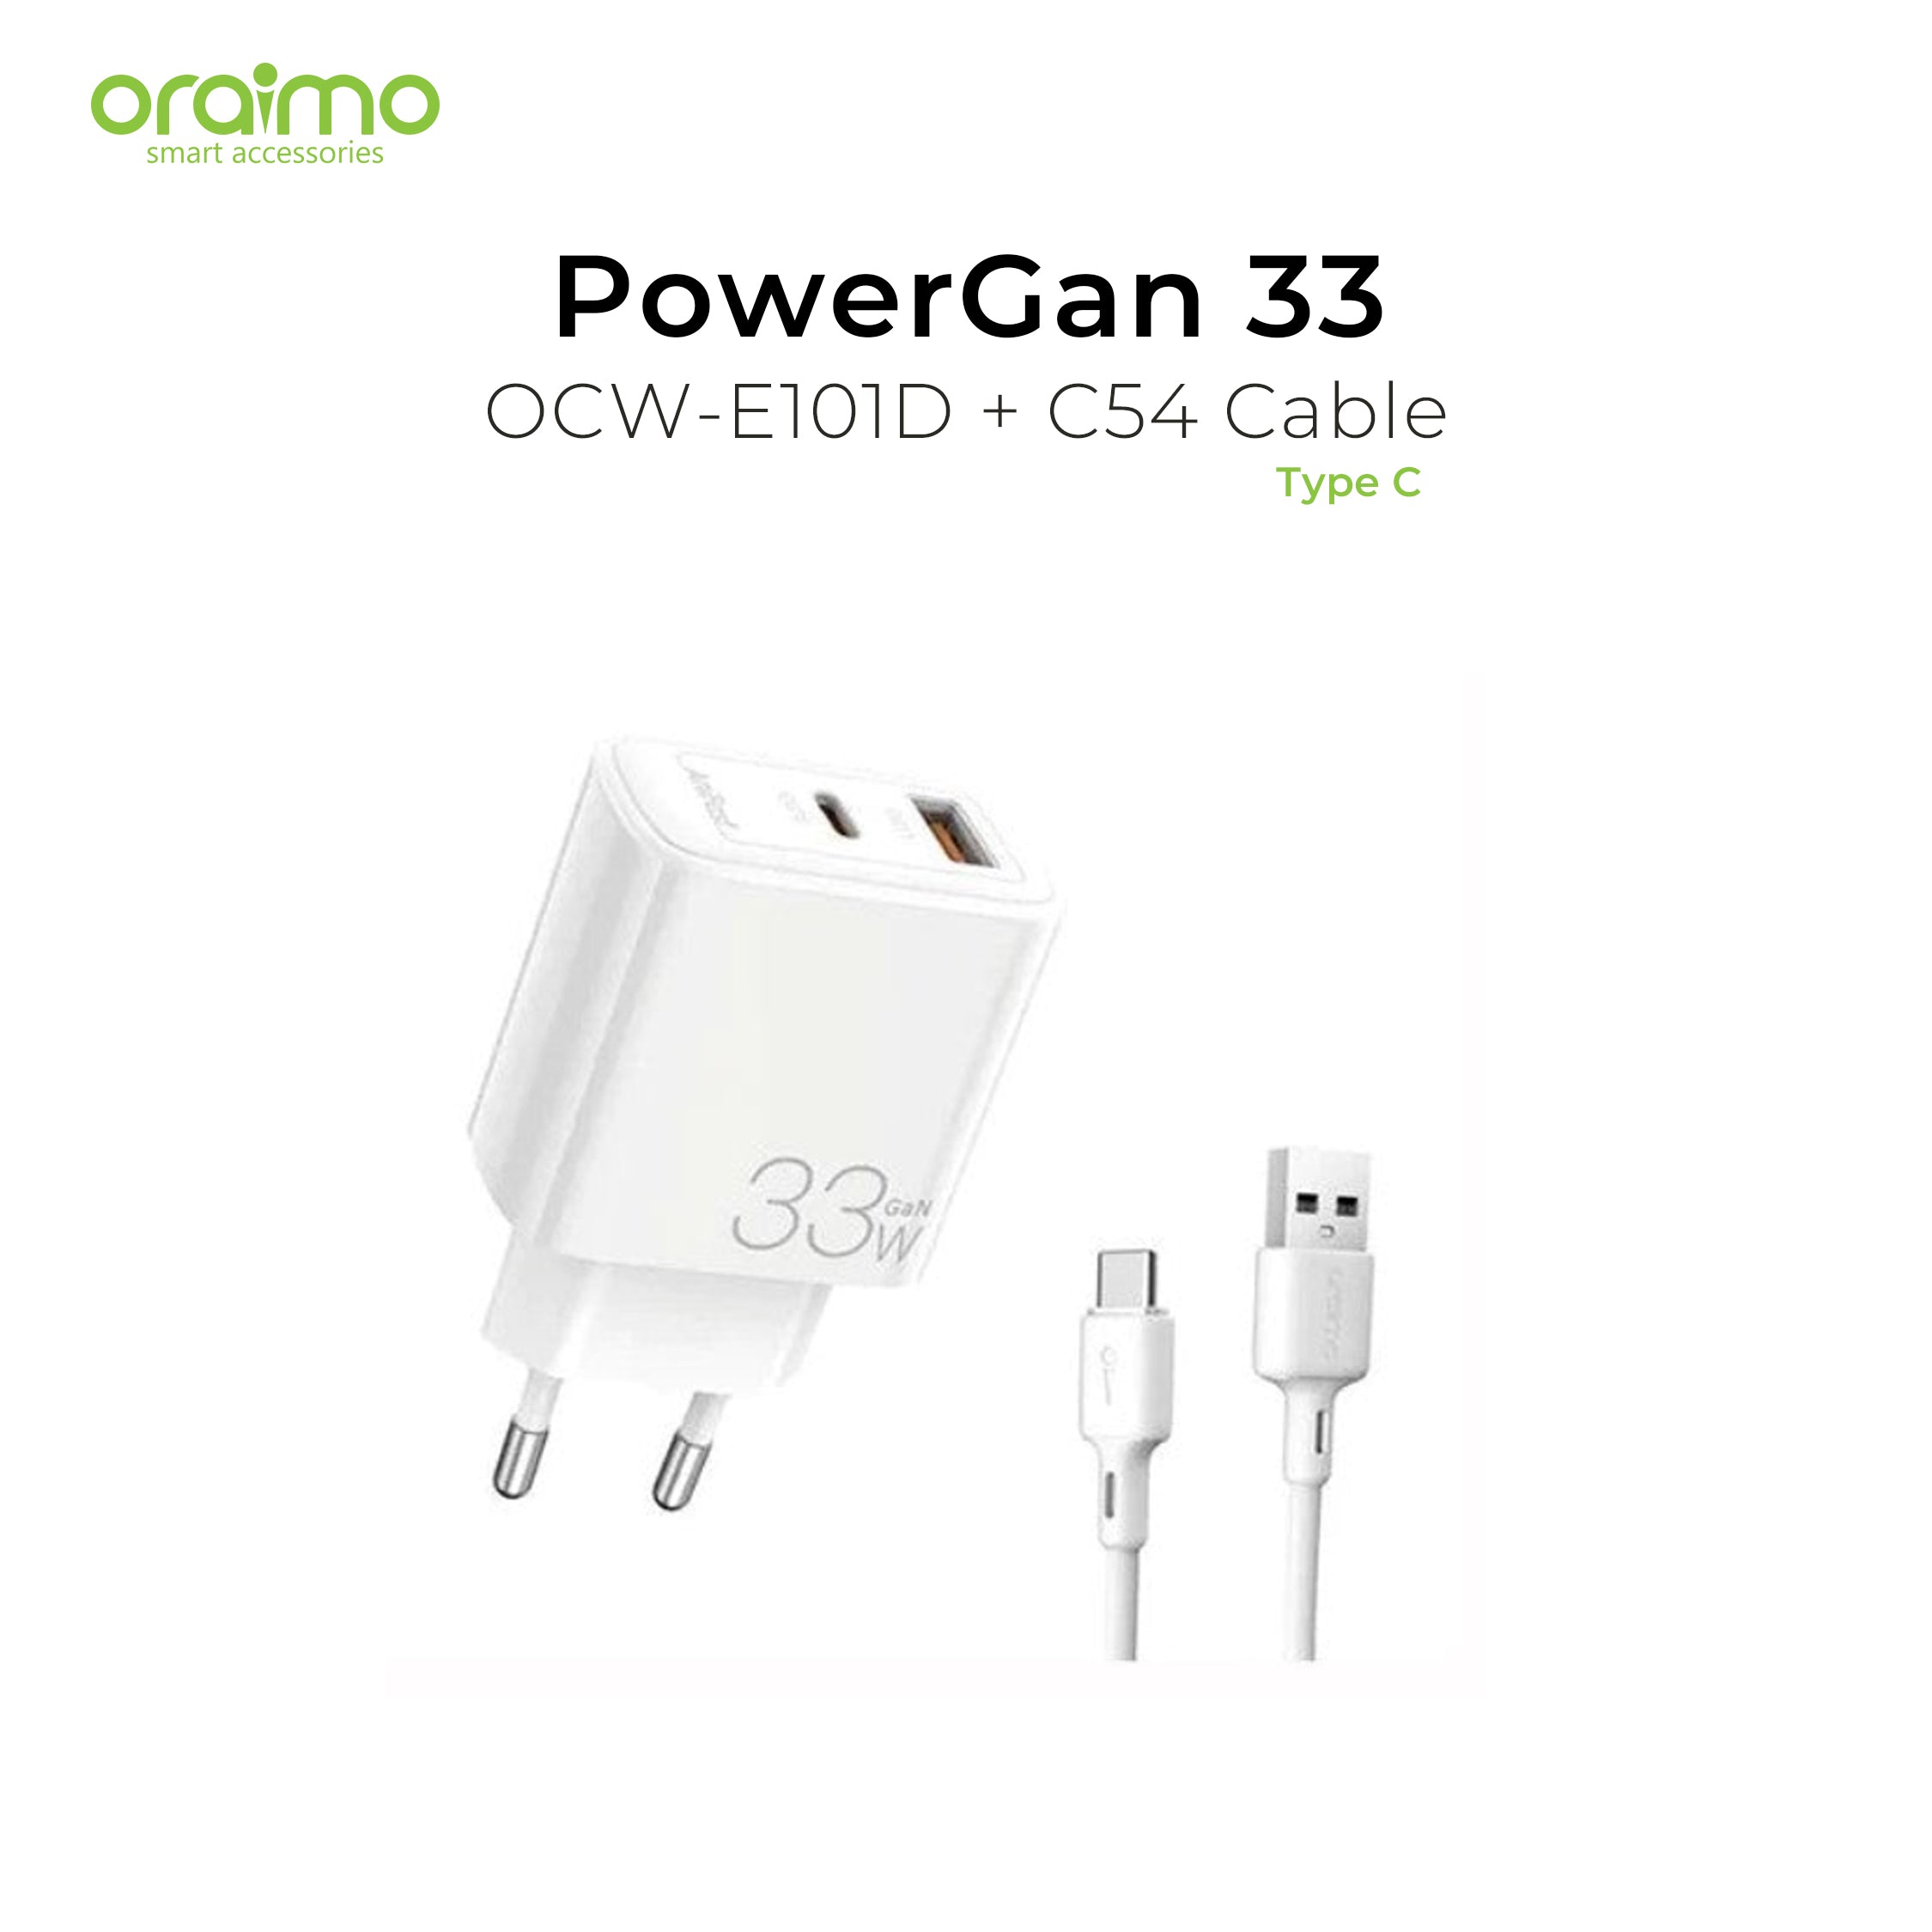 Oraimo PowerGan 33 Charger OCW-E101D + C54